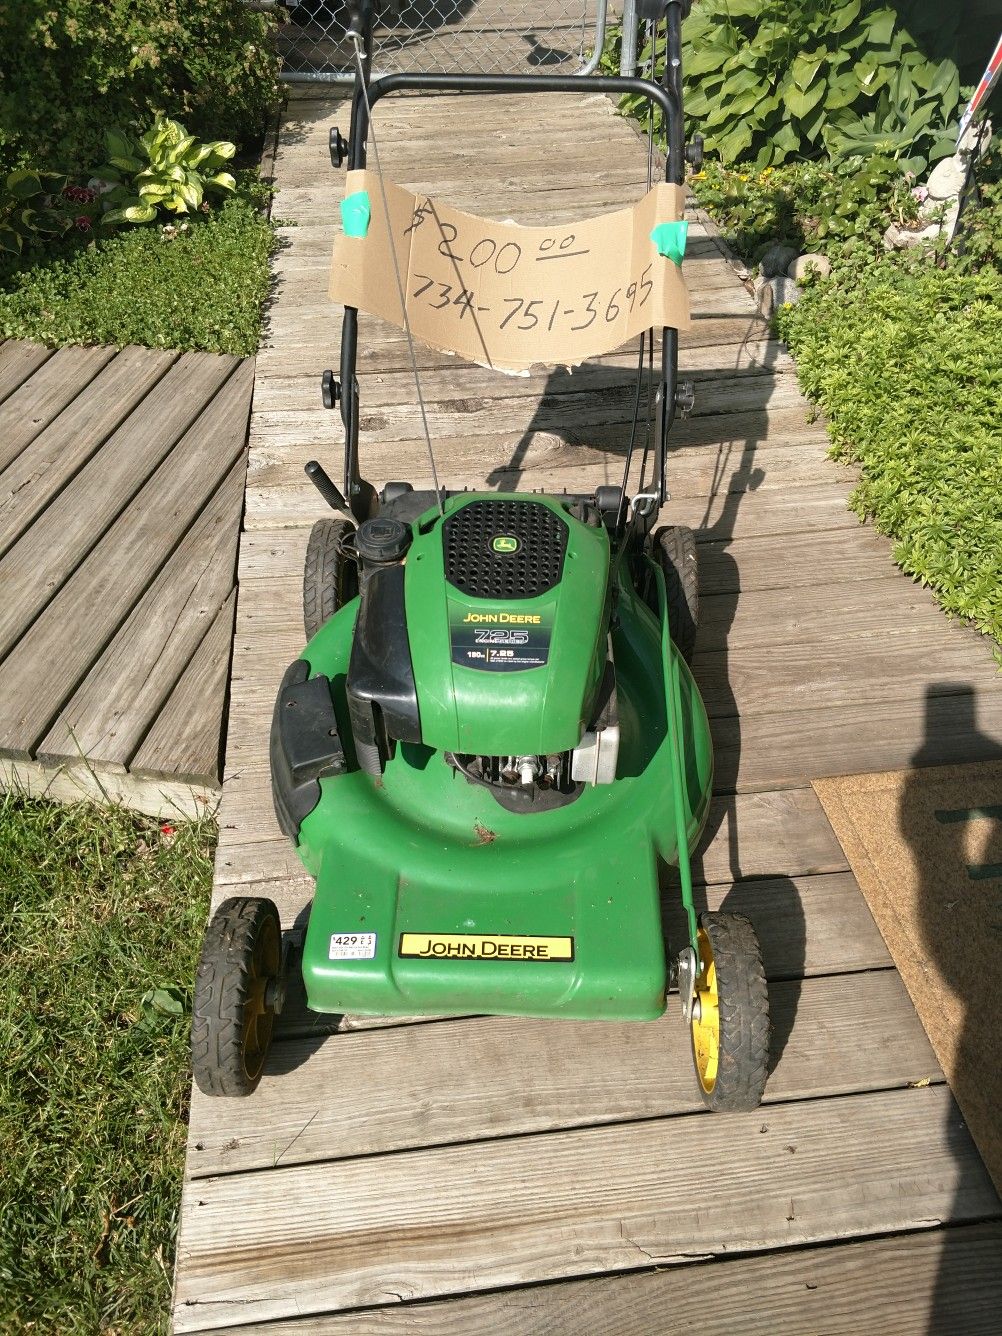 John Deere Self-Propelled Lawn Mower